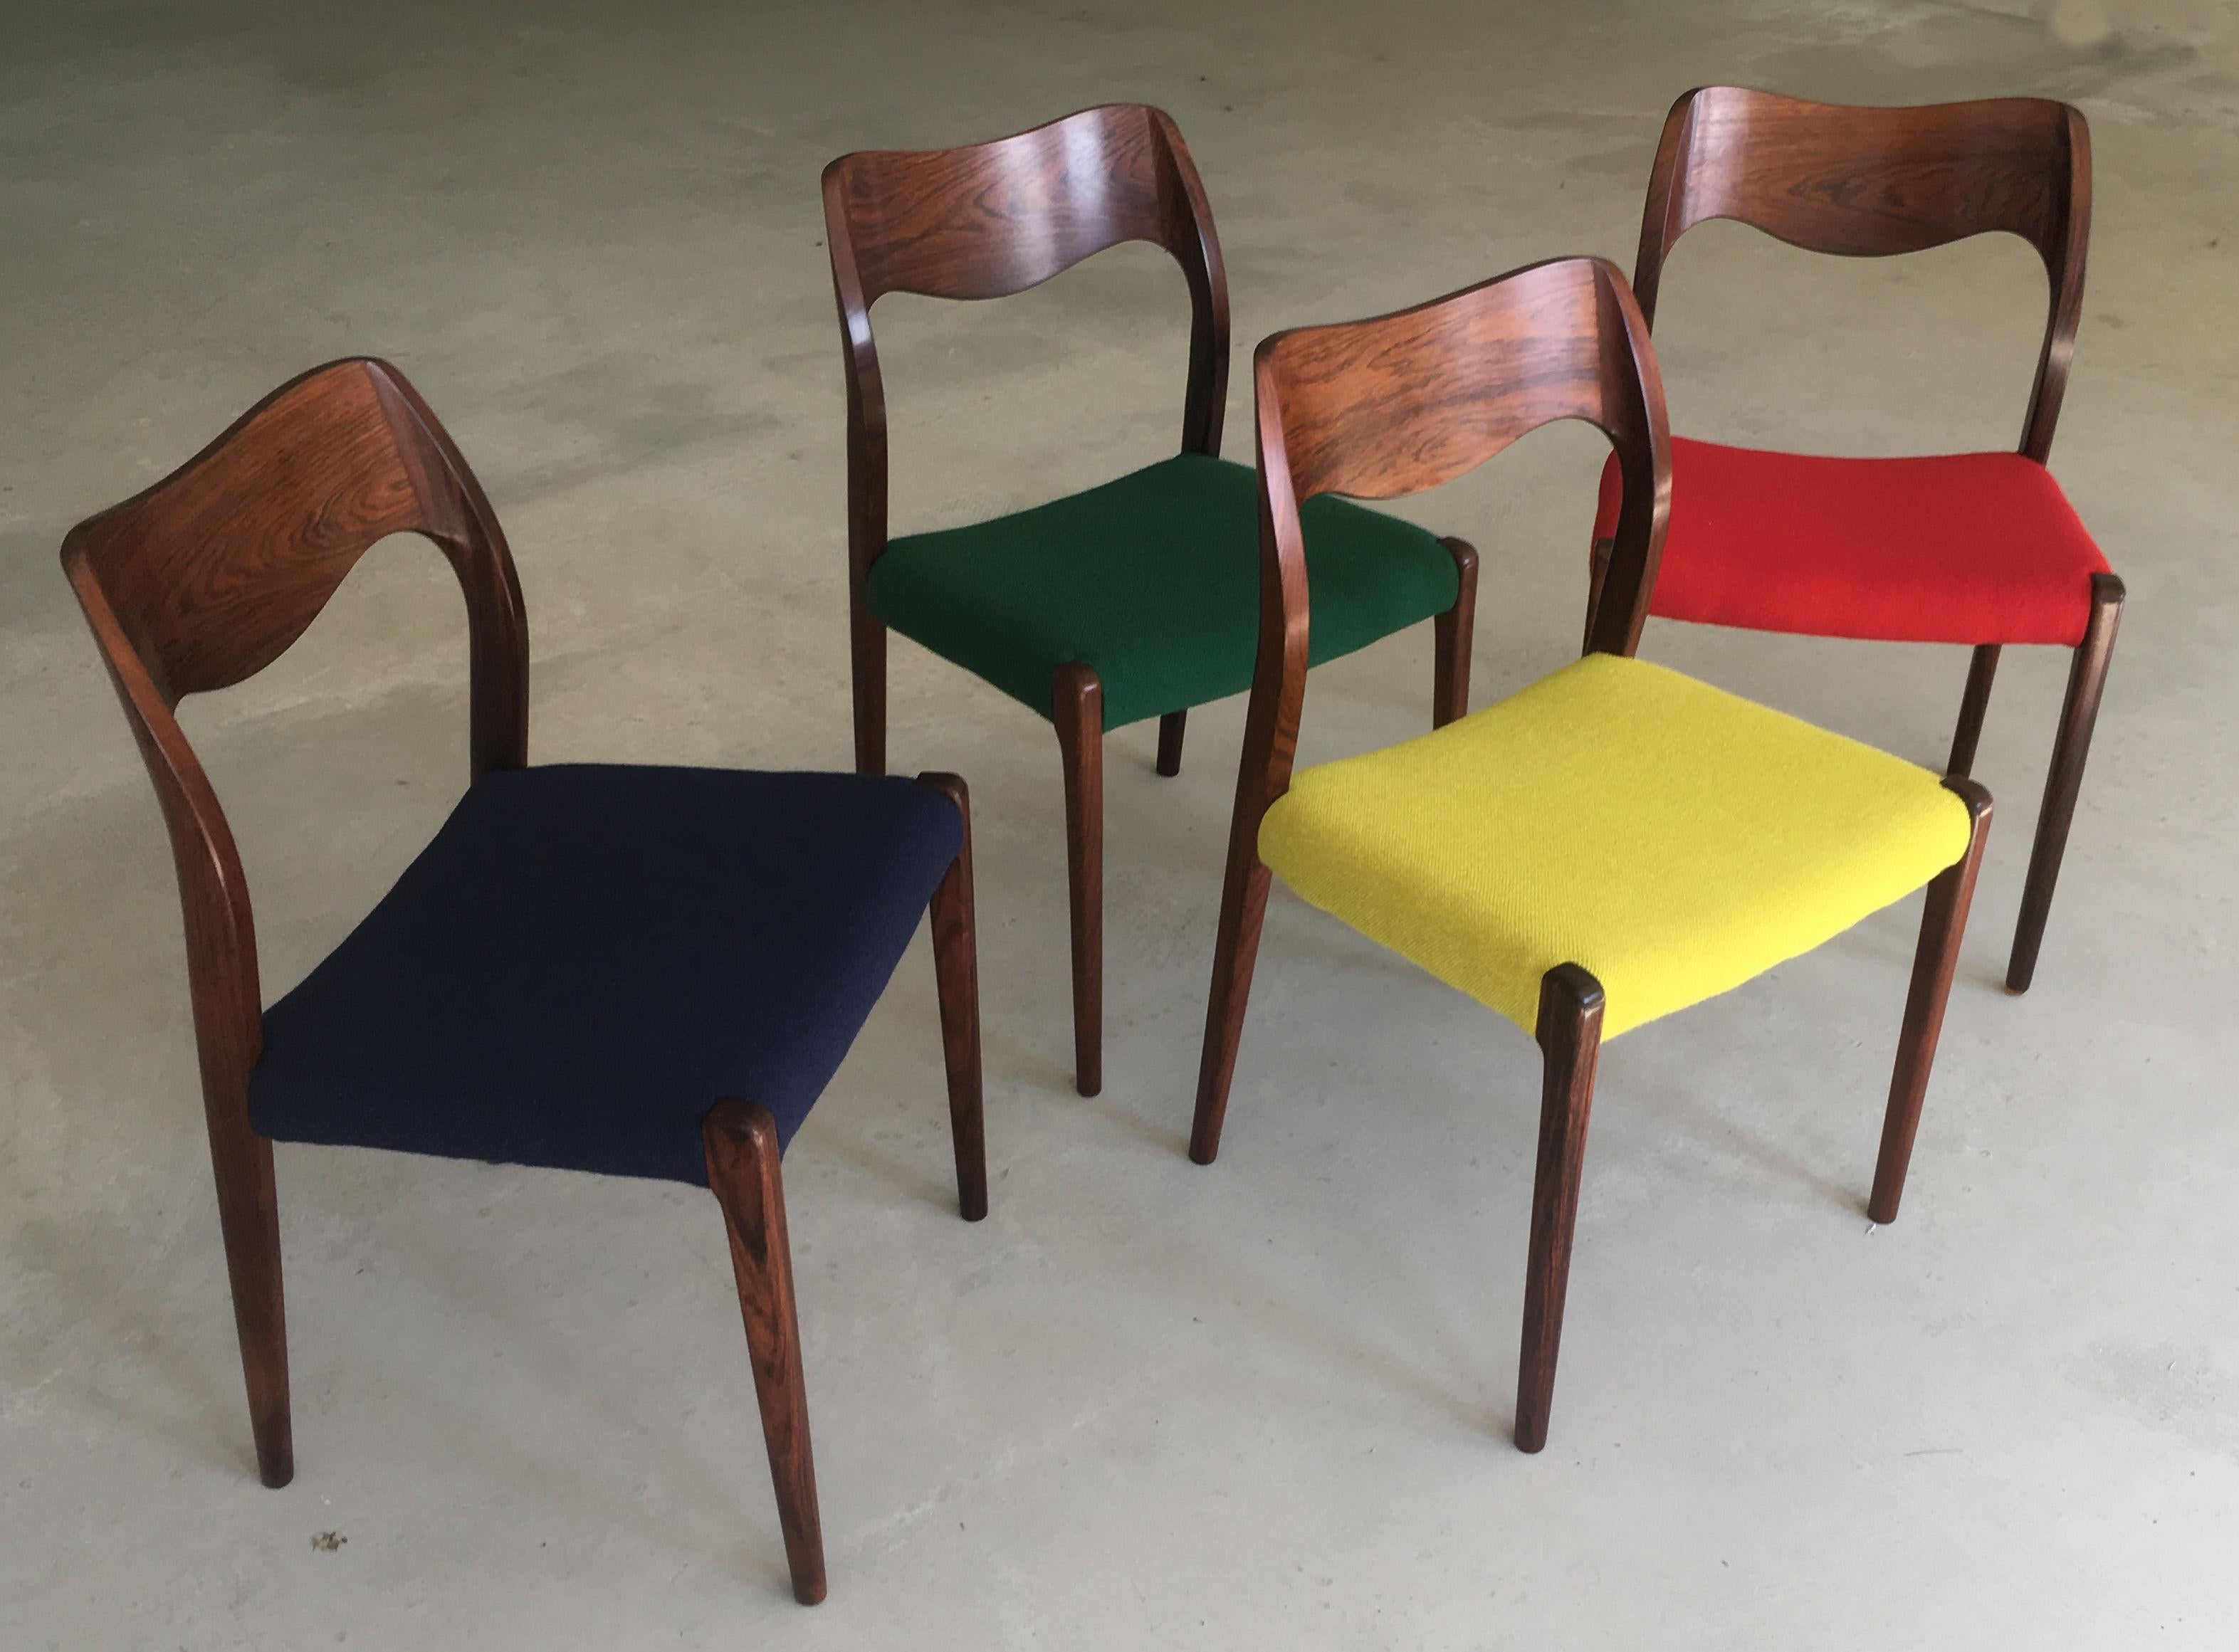 Satz von vier vollständig restaurierten Esszimmerstühlen des Modells 71 aus Palisanderholz, entworfen von Niels Otto Møller im Jahr 1951.

Die Stühle haben einen massiven Rahmen und eine Rückenlehne aus Palisanderholz mit geraden Beinen und einer